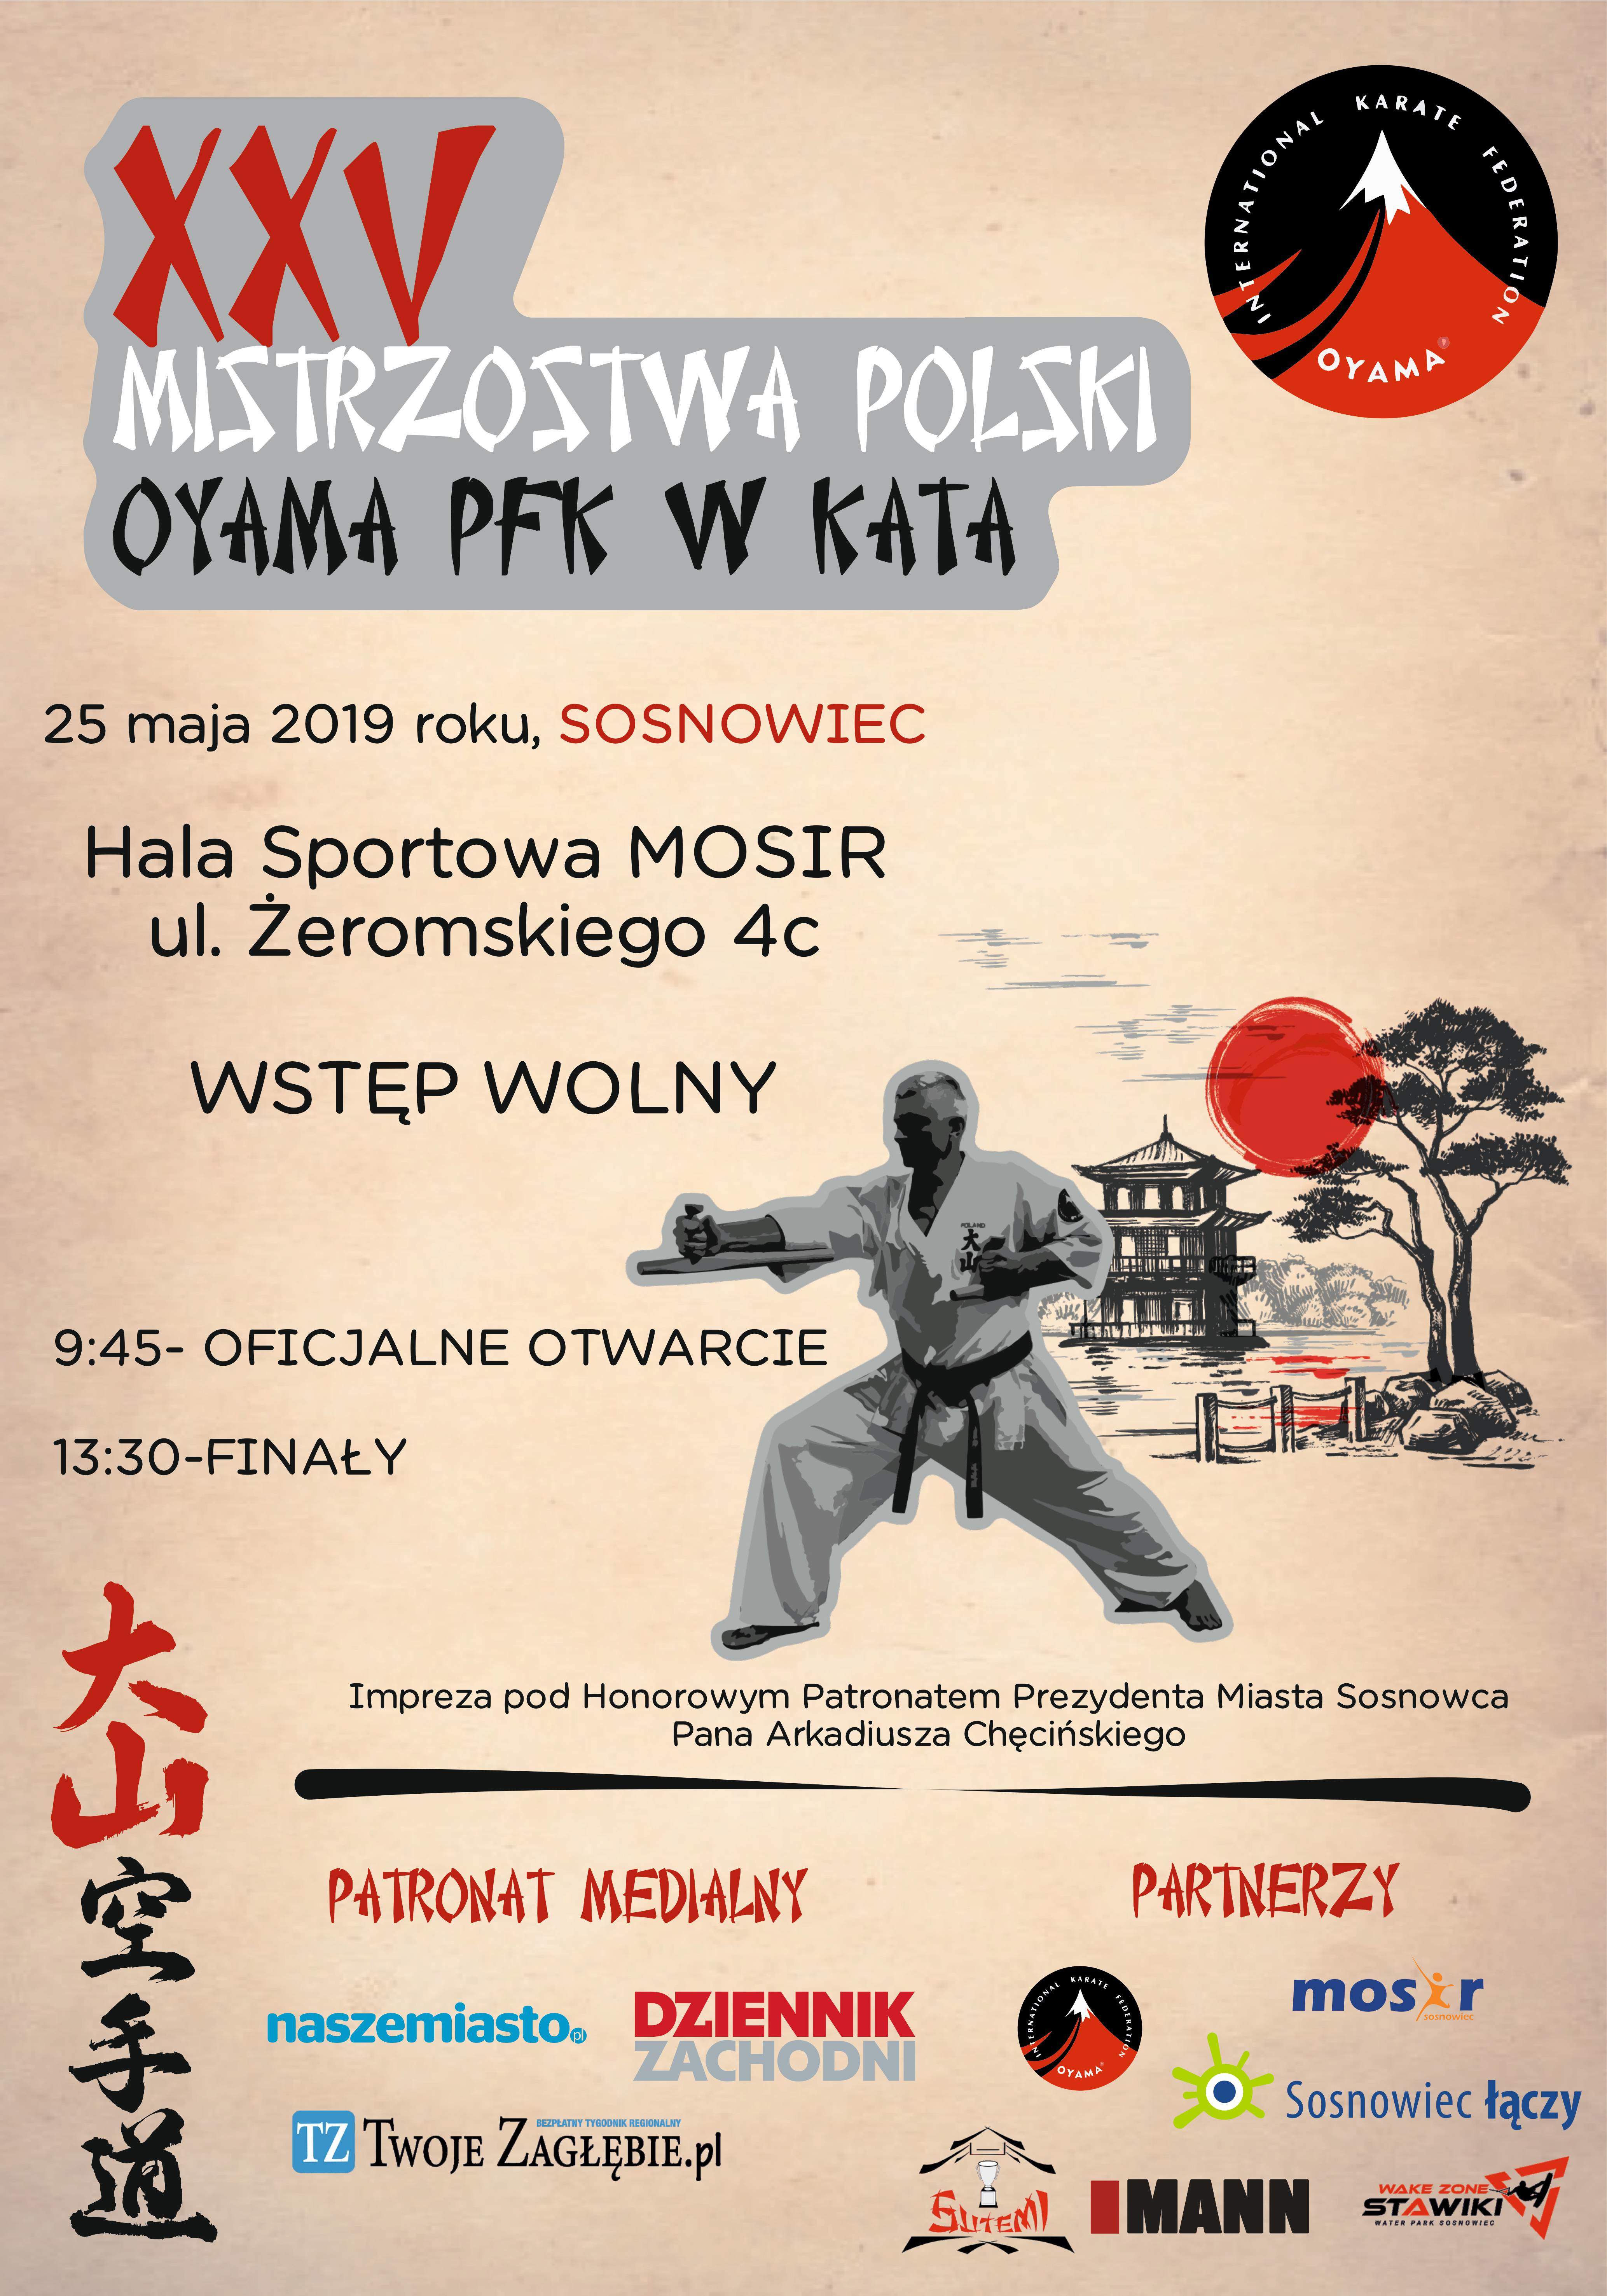 XXV Mistrzostwa Polski Oyama PFK w KATA (Sosnowiec, 25.05.2019r.)